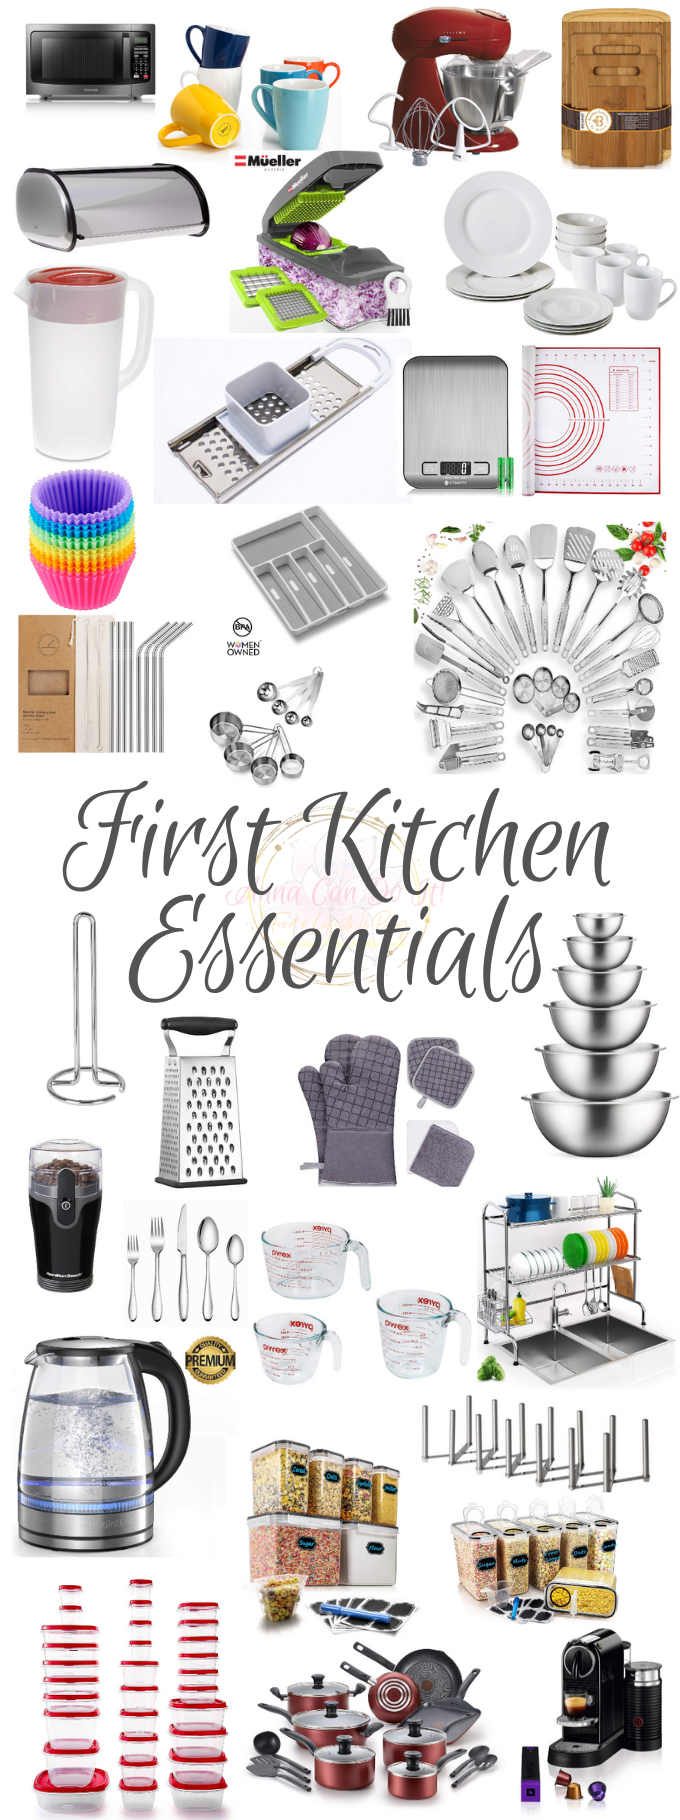 First Kitchen Essentials - Anna Can Do It!